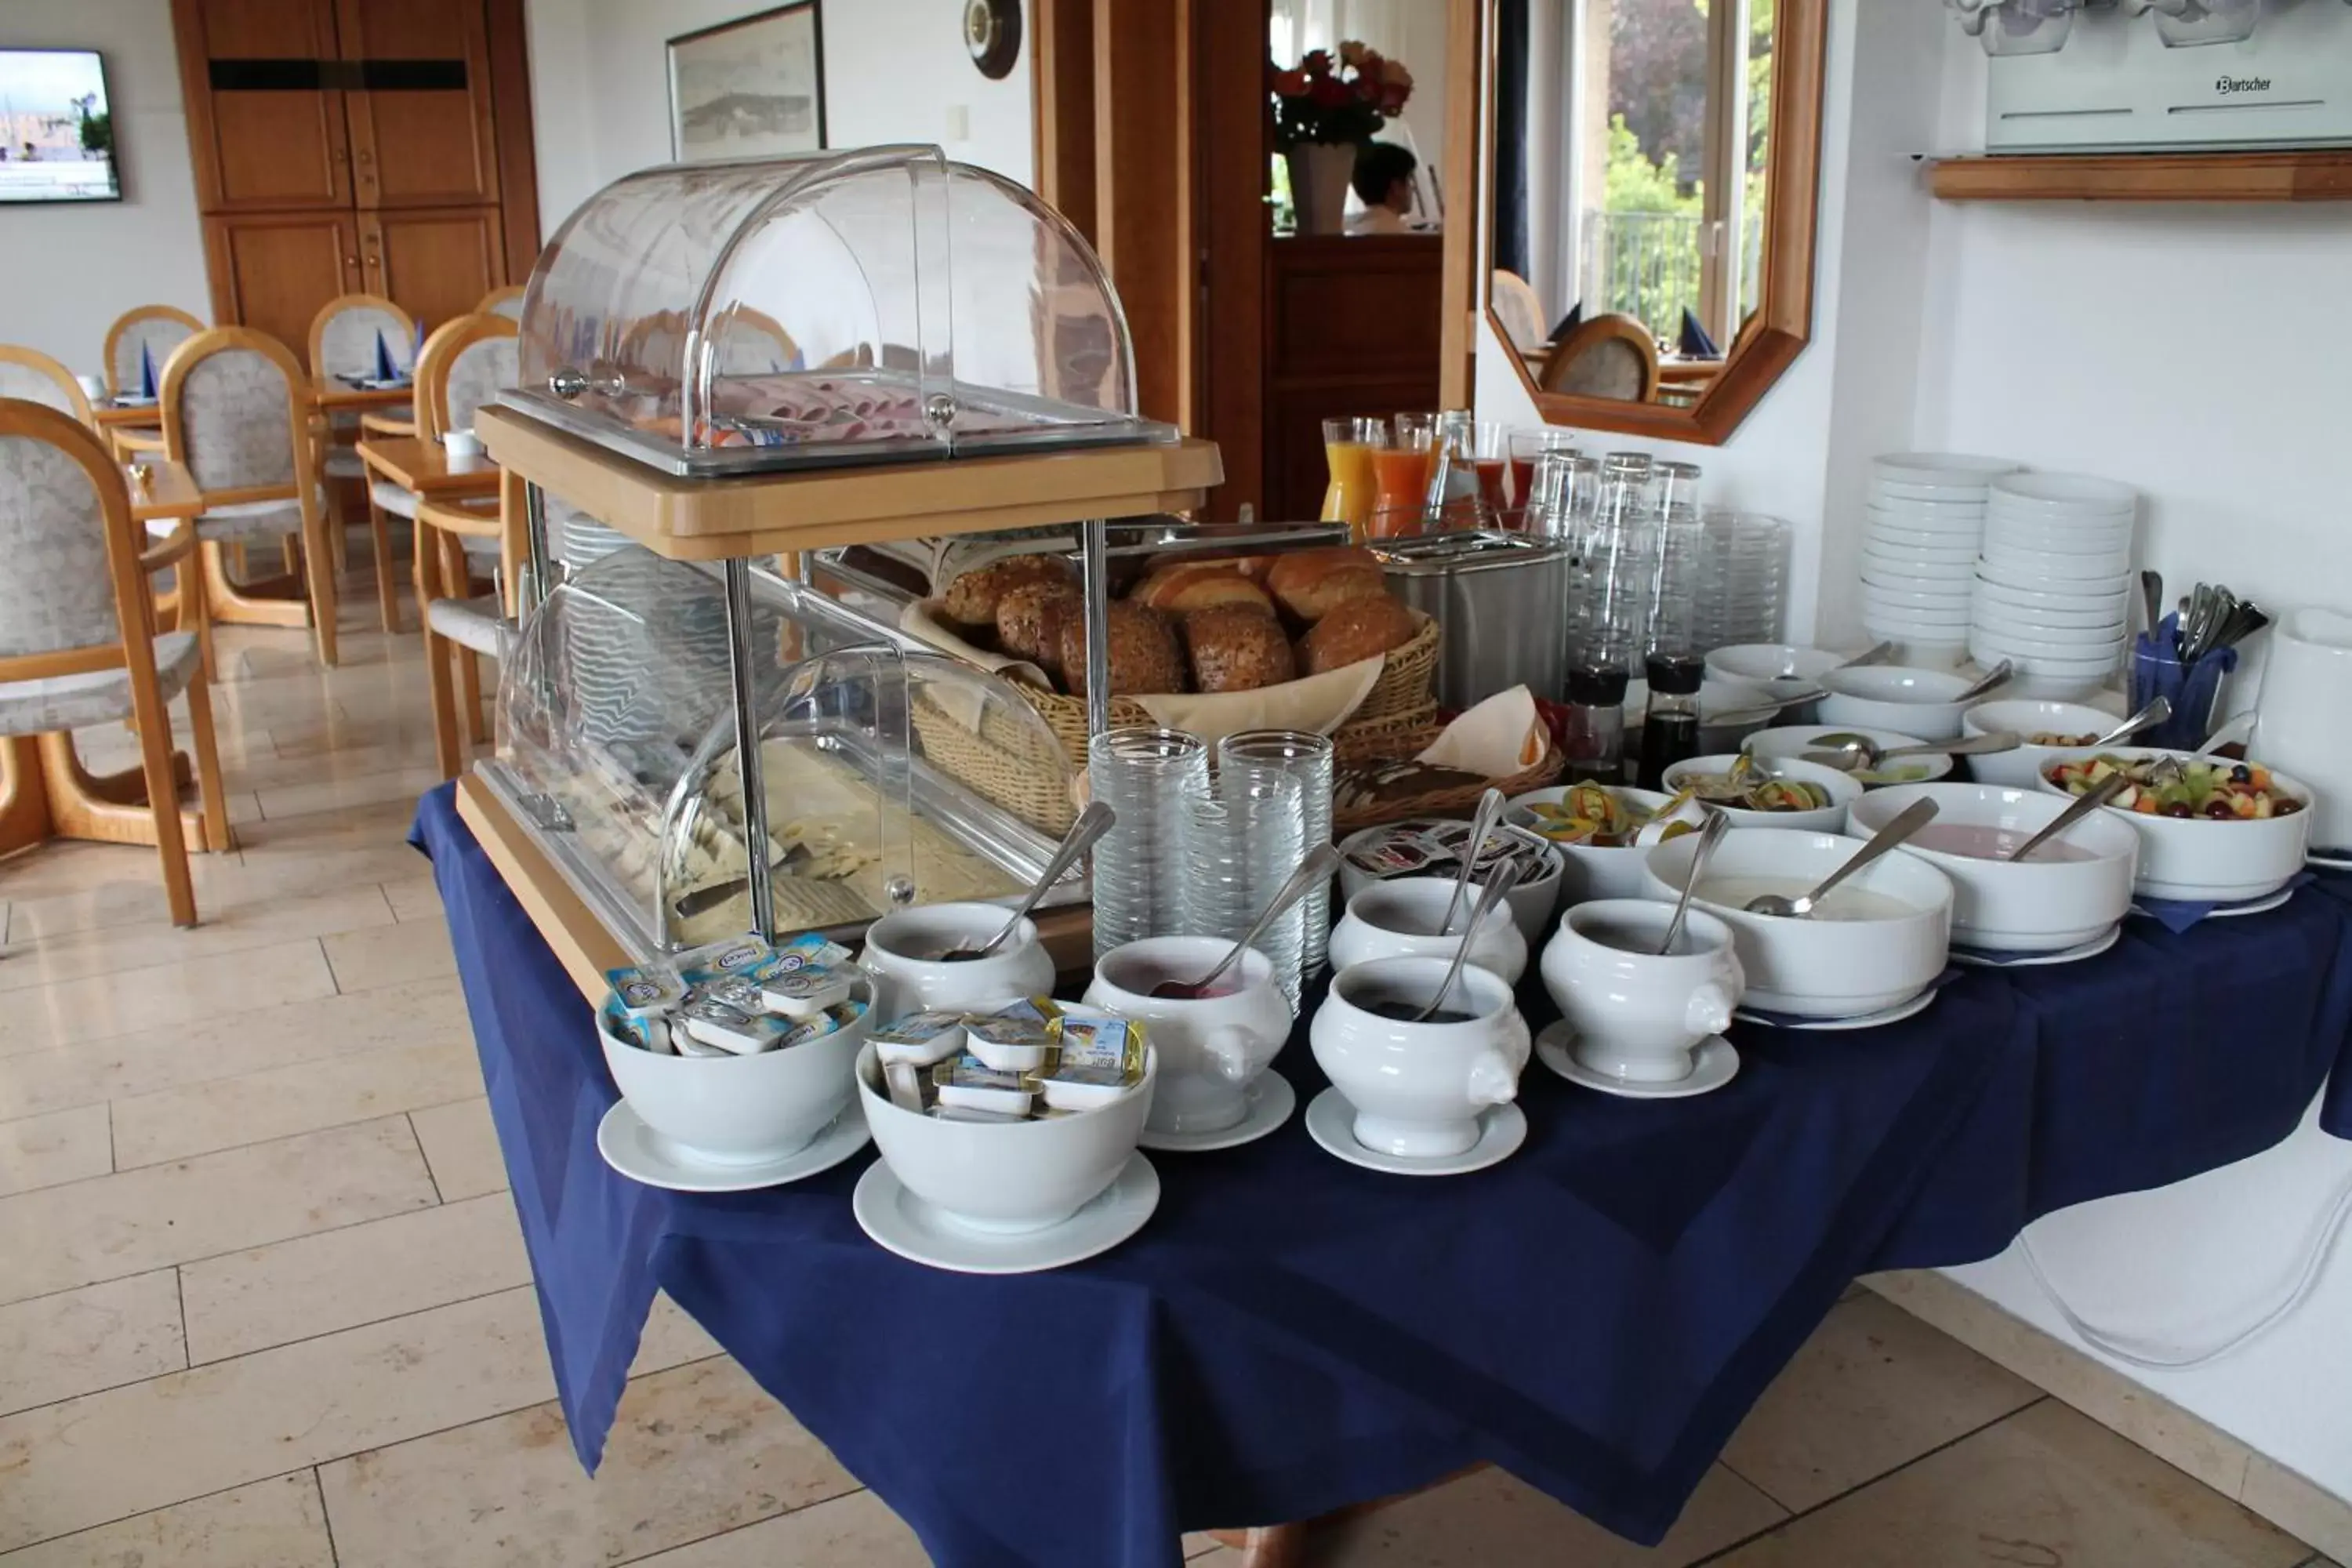 Buffet breakfast in Hotel Windthorst